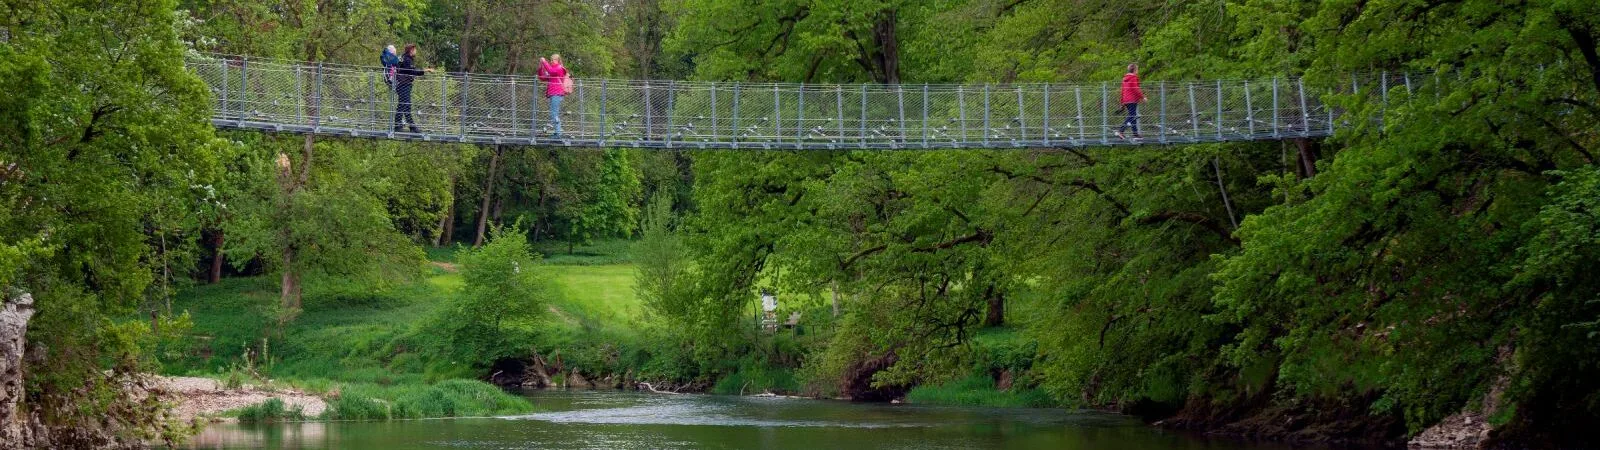 Bild von Hängebrücke über Wasser mit 4 Personen auf der Brücke